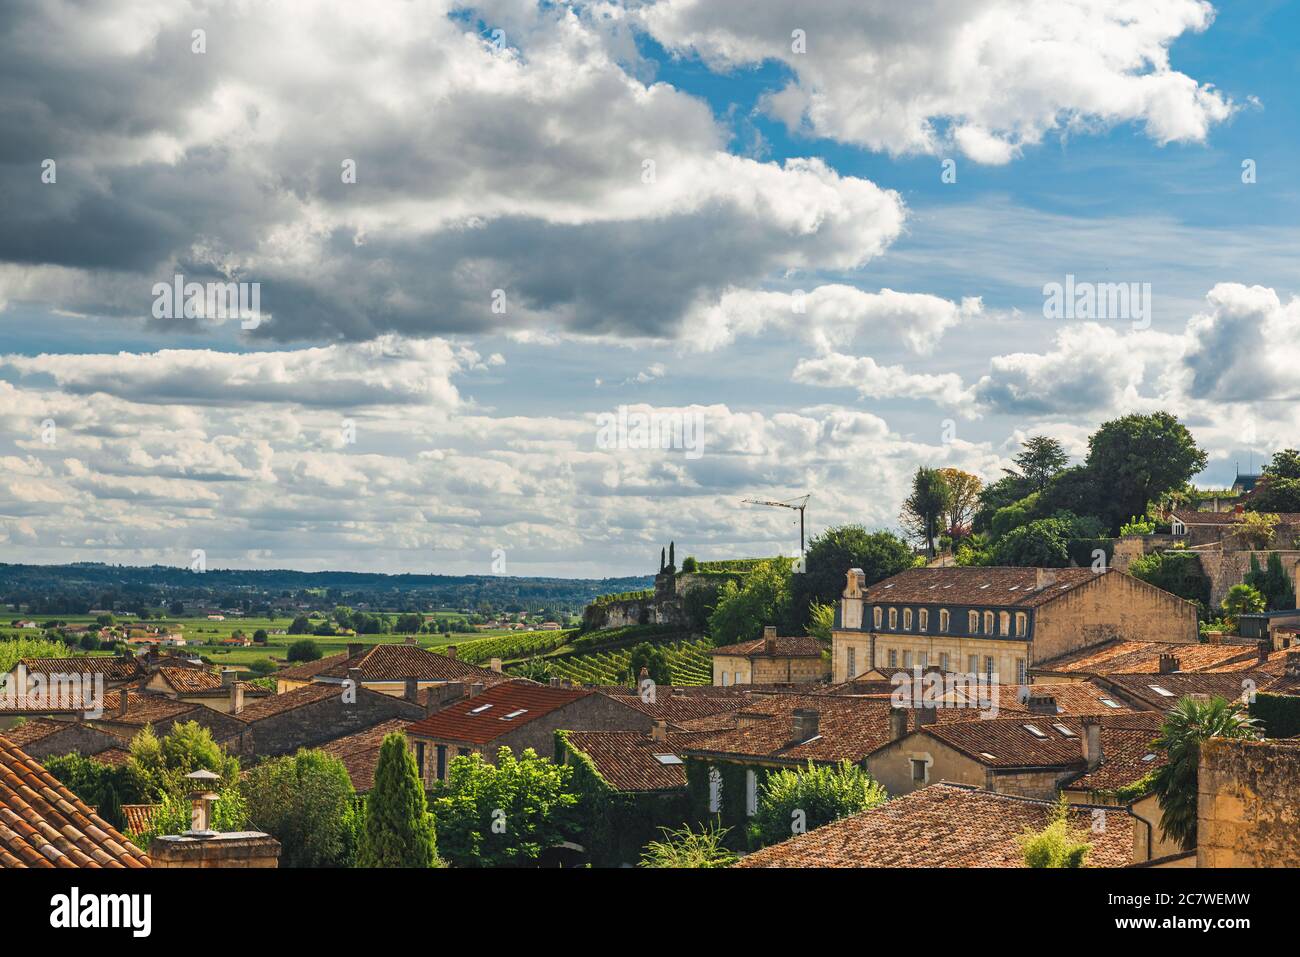 Vue aérienne de la vieille ville médiévale française Saint Emilion avec vignobles en Aquitaine, France. Célèbre région viticole française Banque D'Images